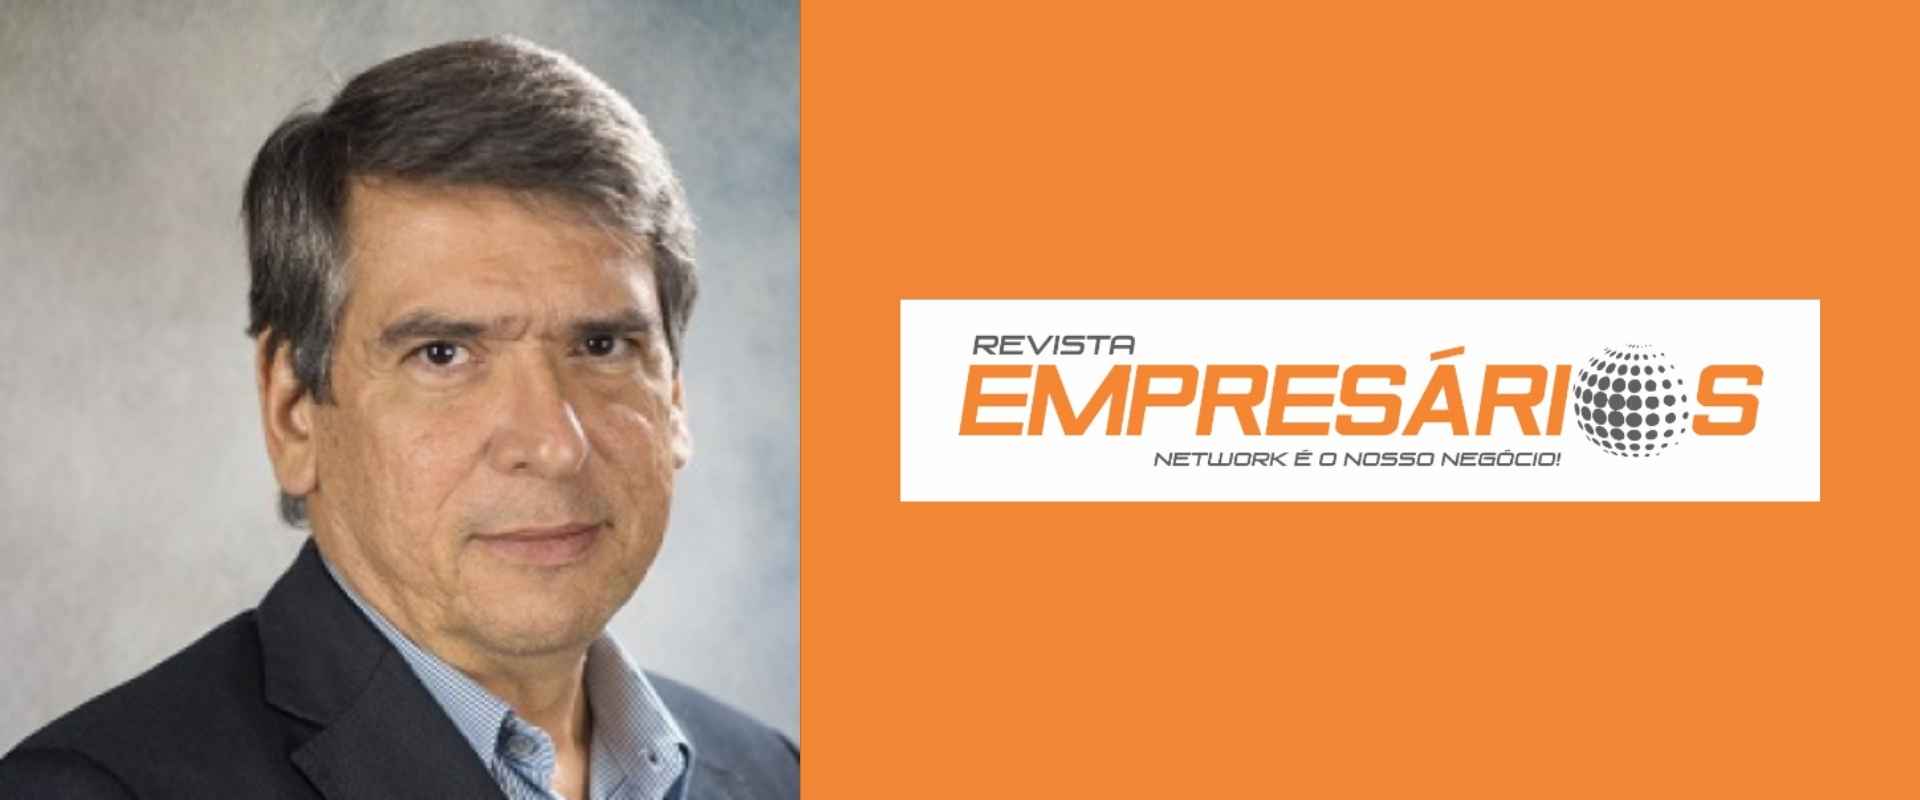 O Profº Vicente Ferreira explica em seu artigo como o executivo se demonstra forte perante as outras formações. 